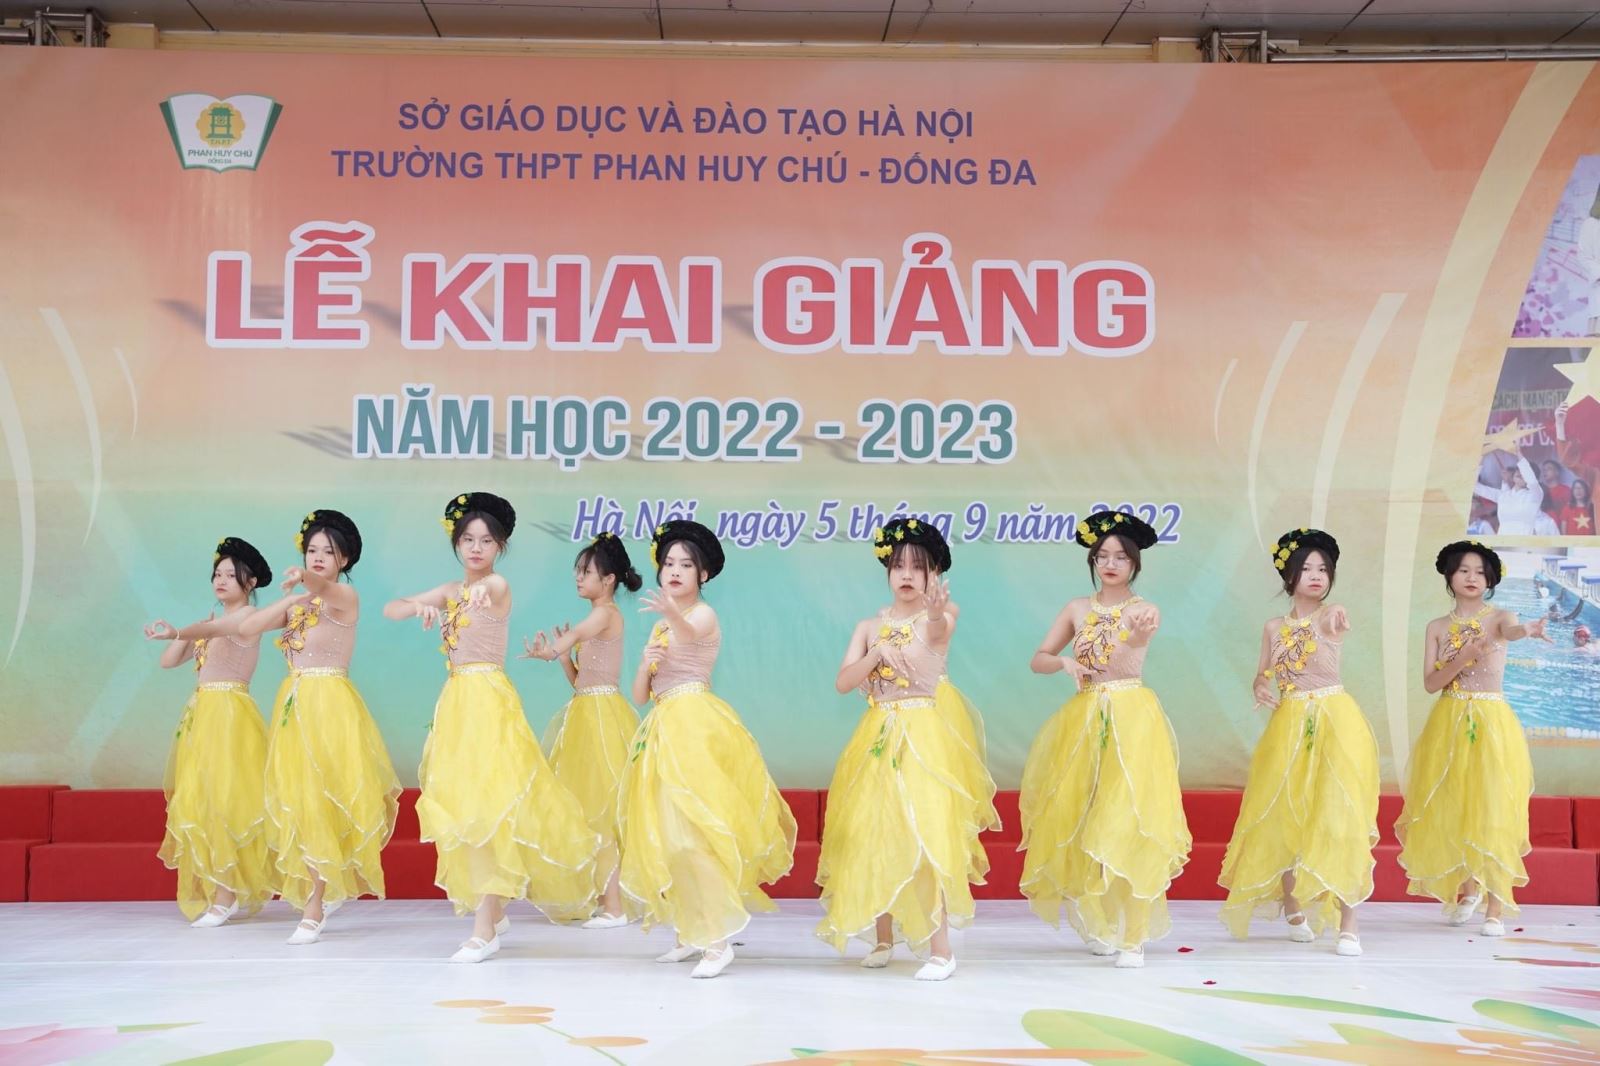 Trường Phan Huy Chú với nhiều tiết mục văn nghệ chào mừng do học sinh của trường biểu diễn.